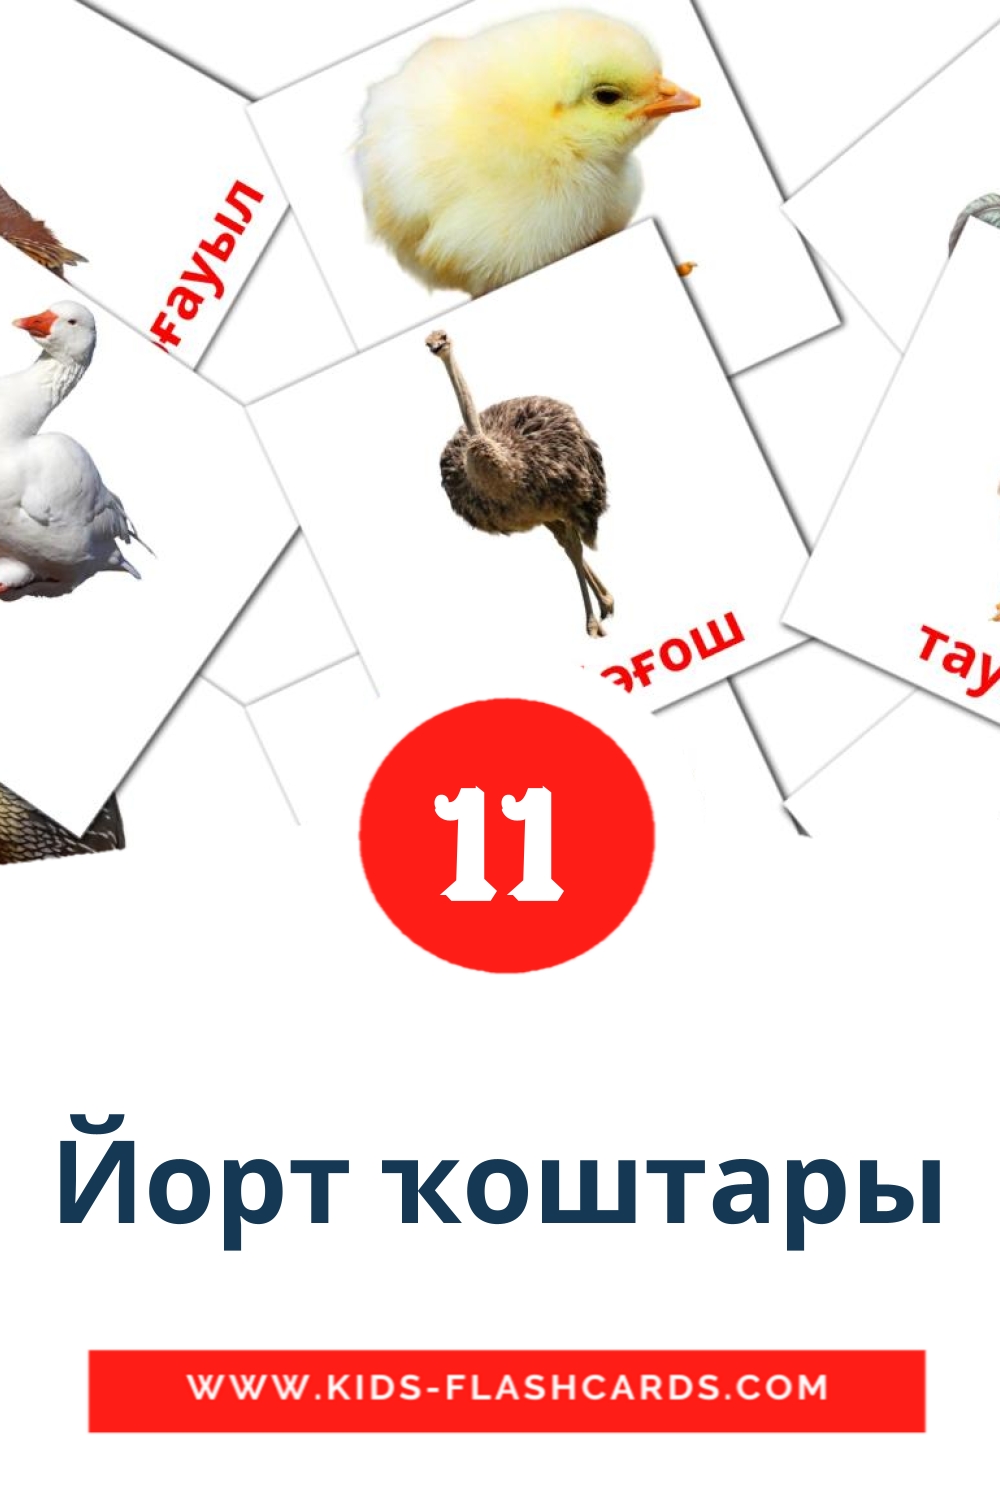 11 Йорт ҡоштары fotokaarten voor kleuters in het bashkir